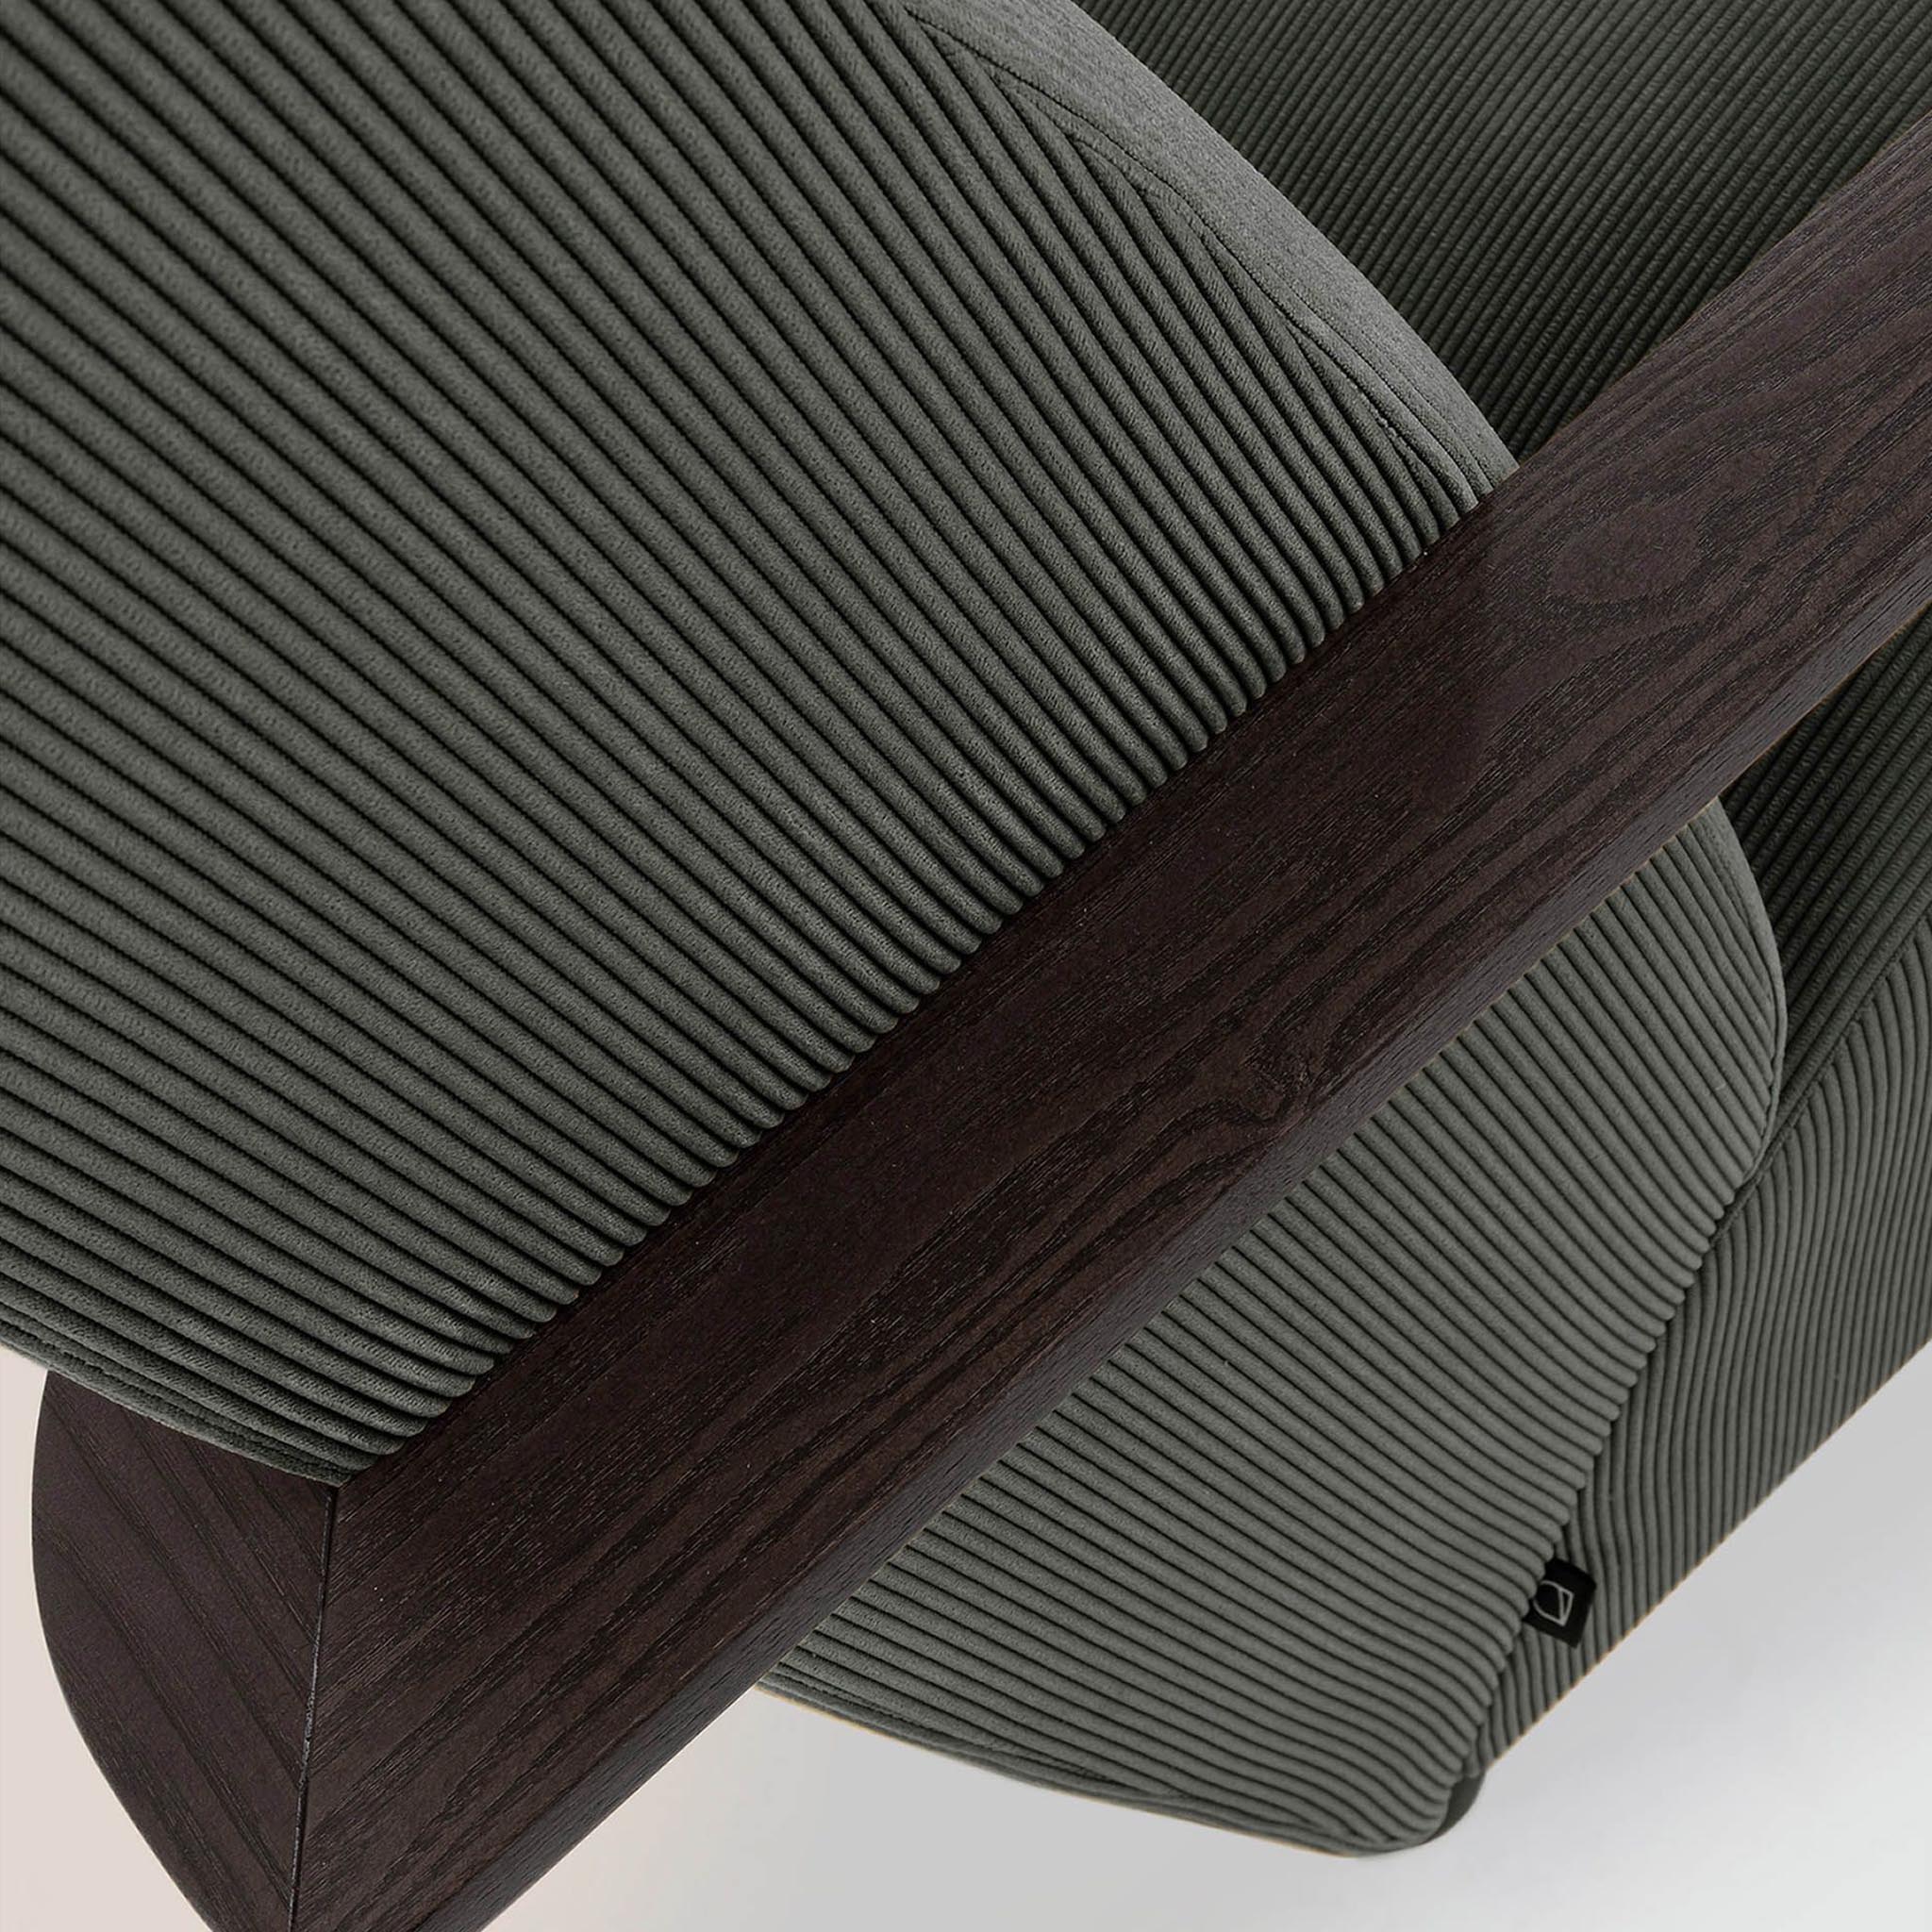 Kave Home Sessel Meghan - SKU #S517PN15 in Farbe Grau - Beine in Dunkelbraun  - Material